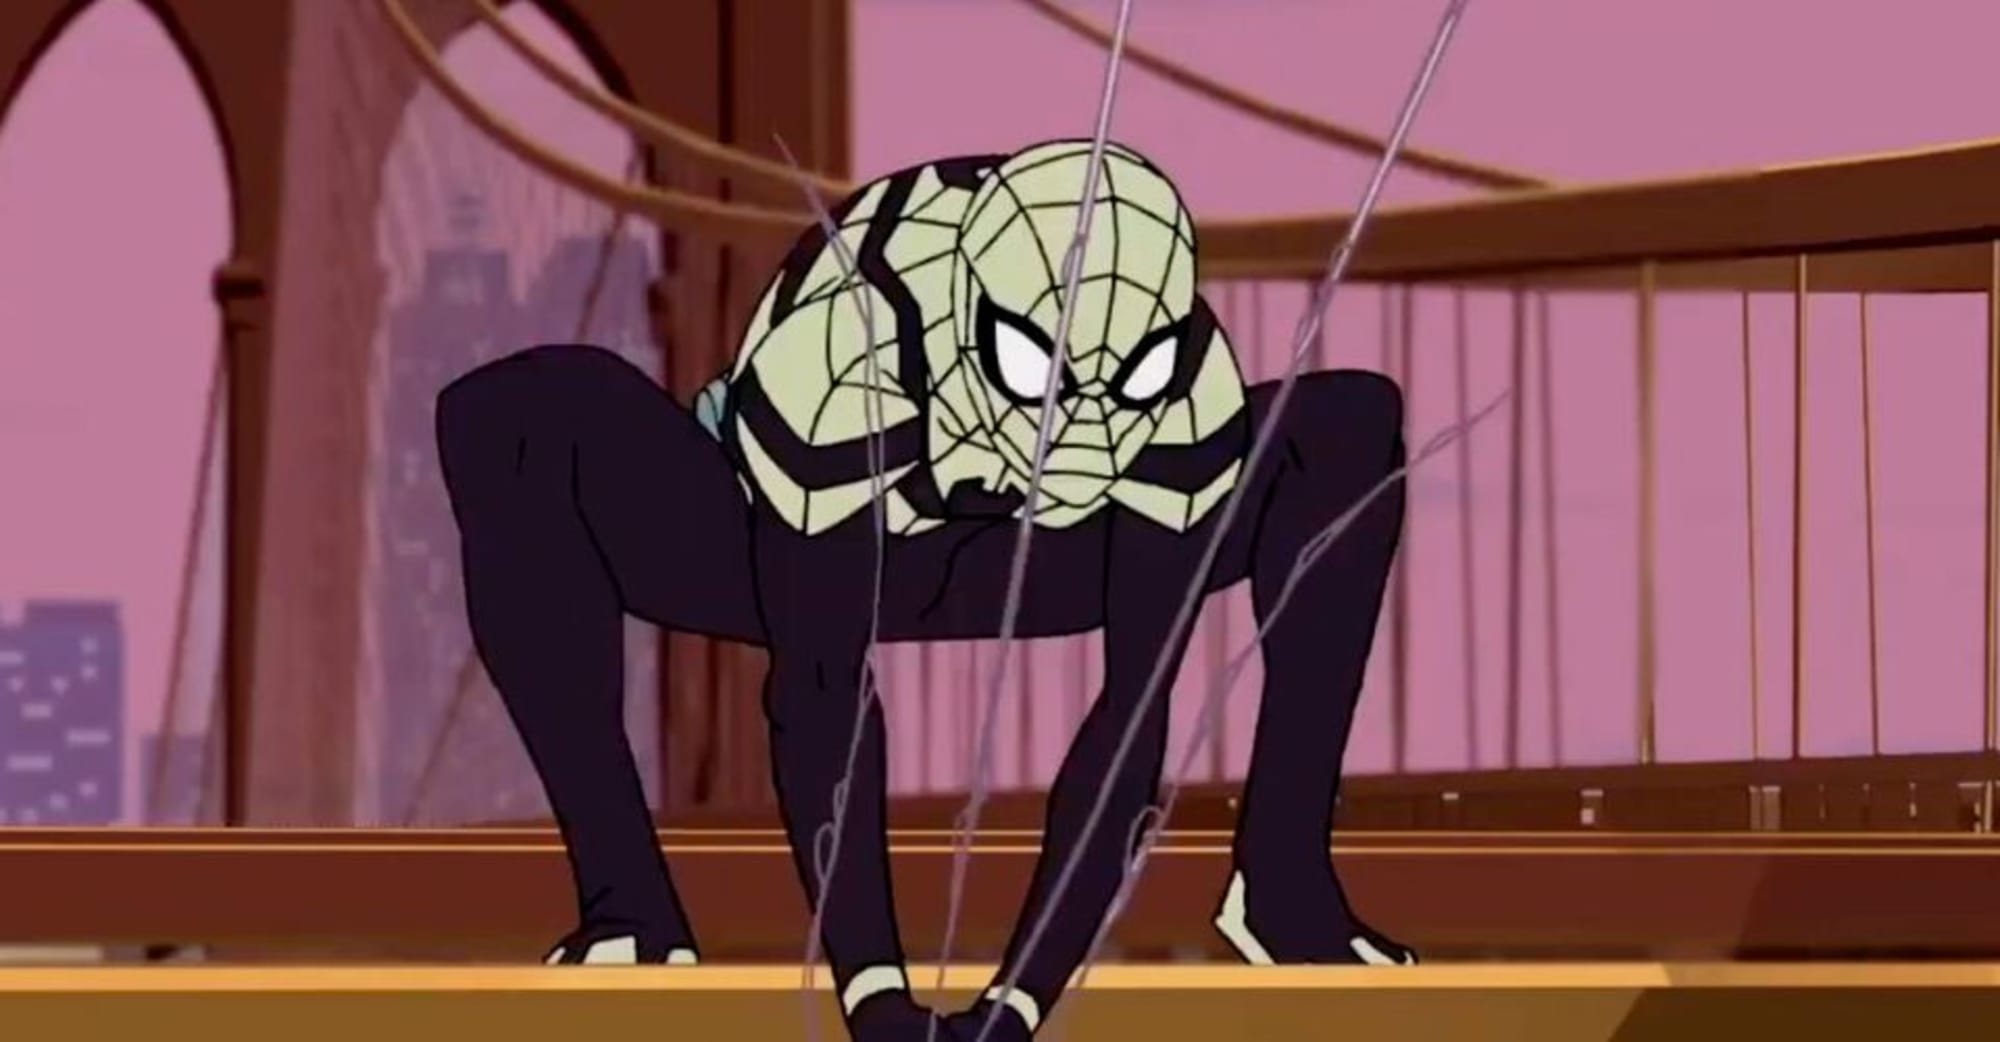 Watch Marvel's Spider-Man: Maximum Venom online: Stream DisneyNOW